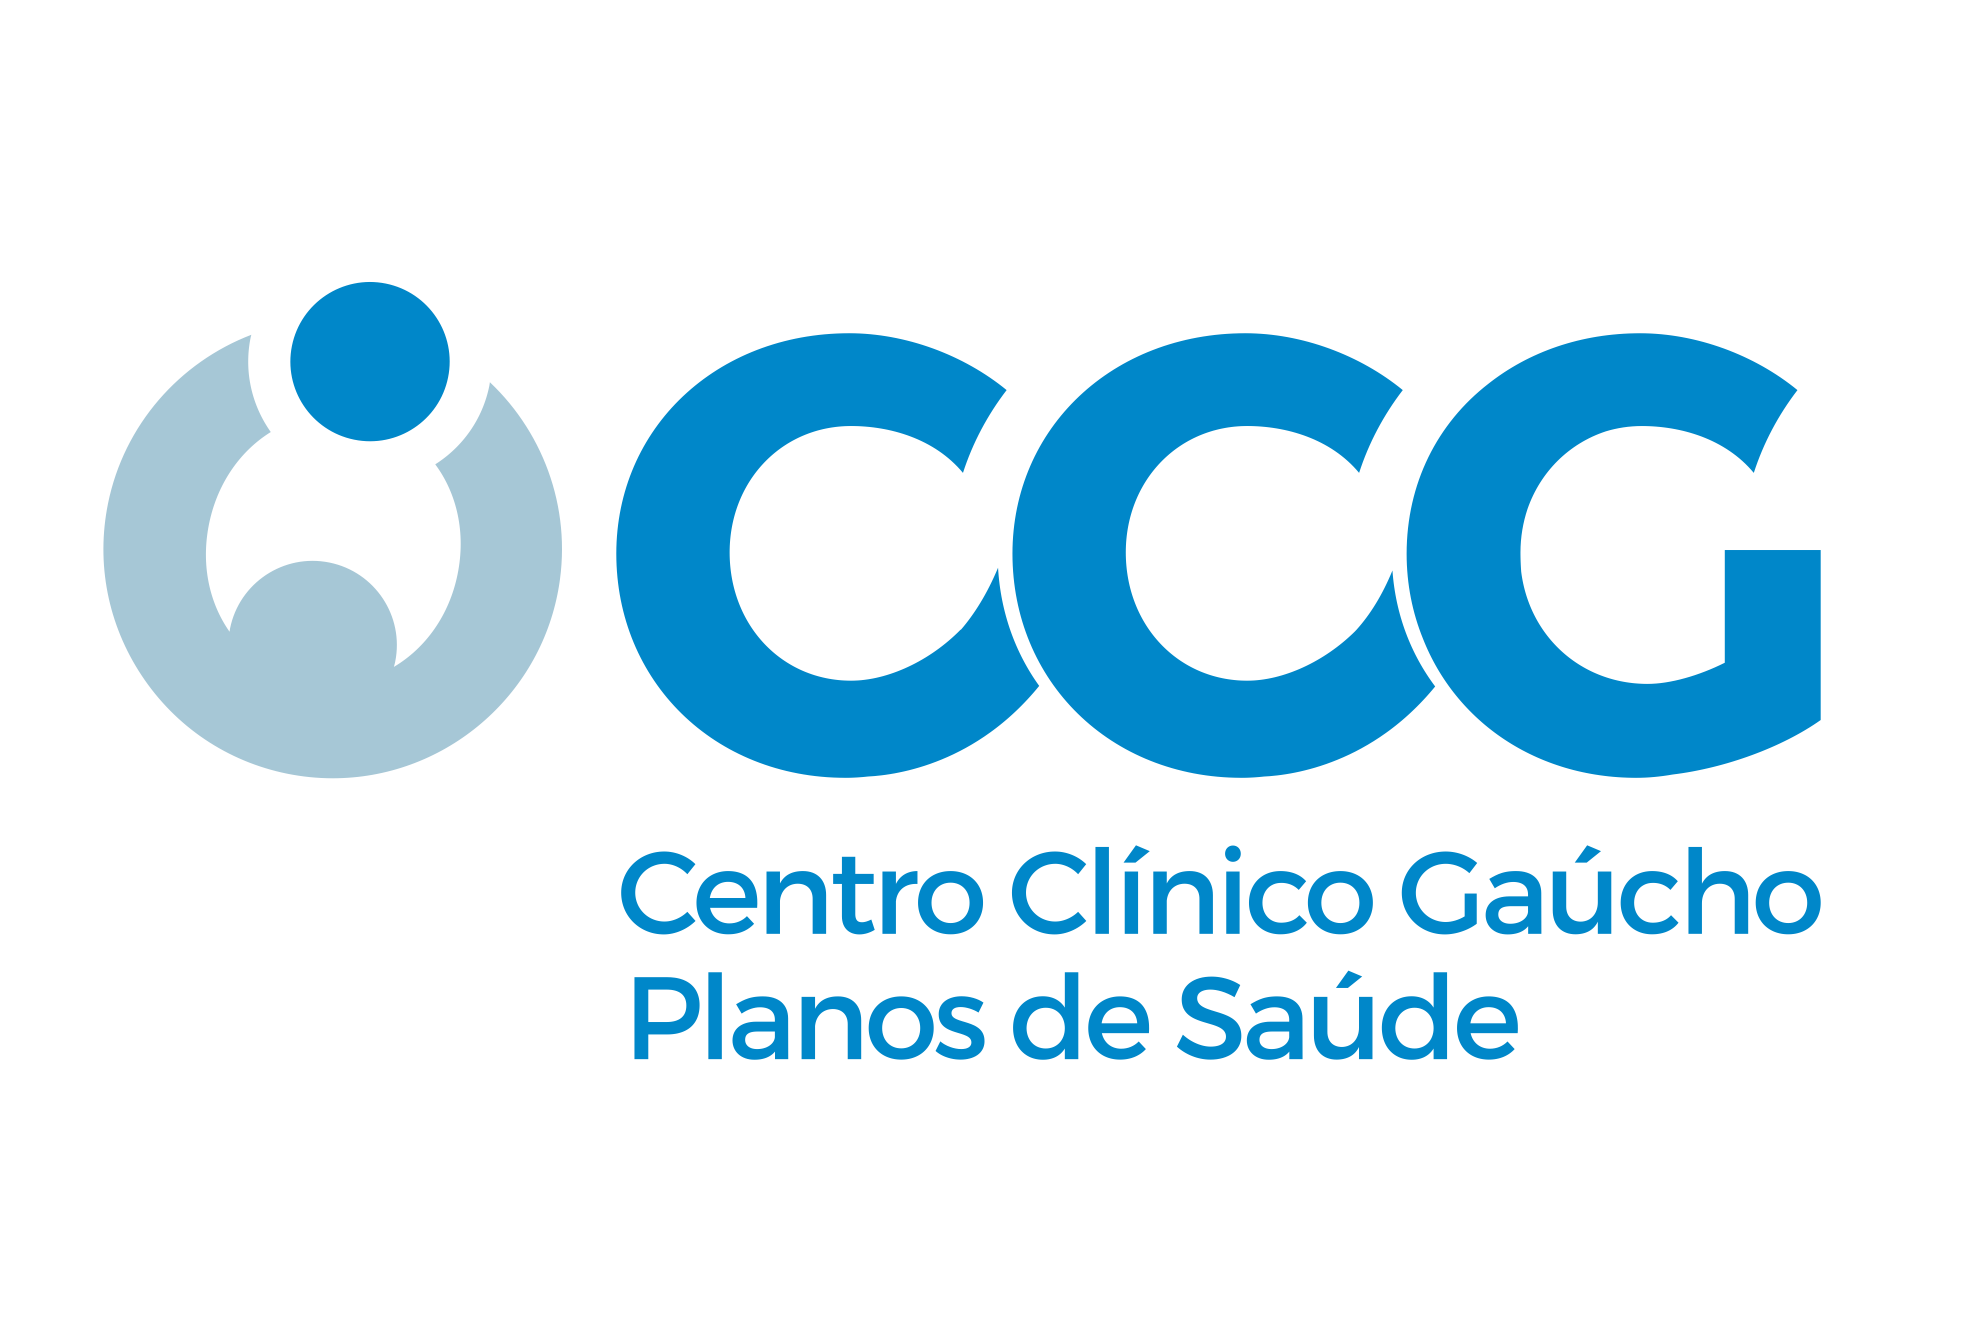 CENTRO CLINICO GAUCHO - Produtos e Serviços - Porto Alegre, RS